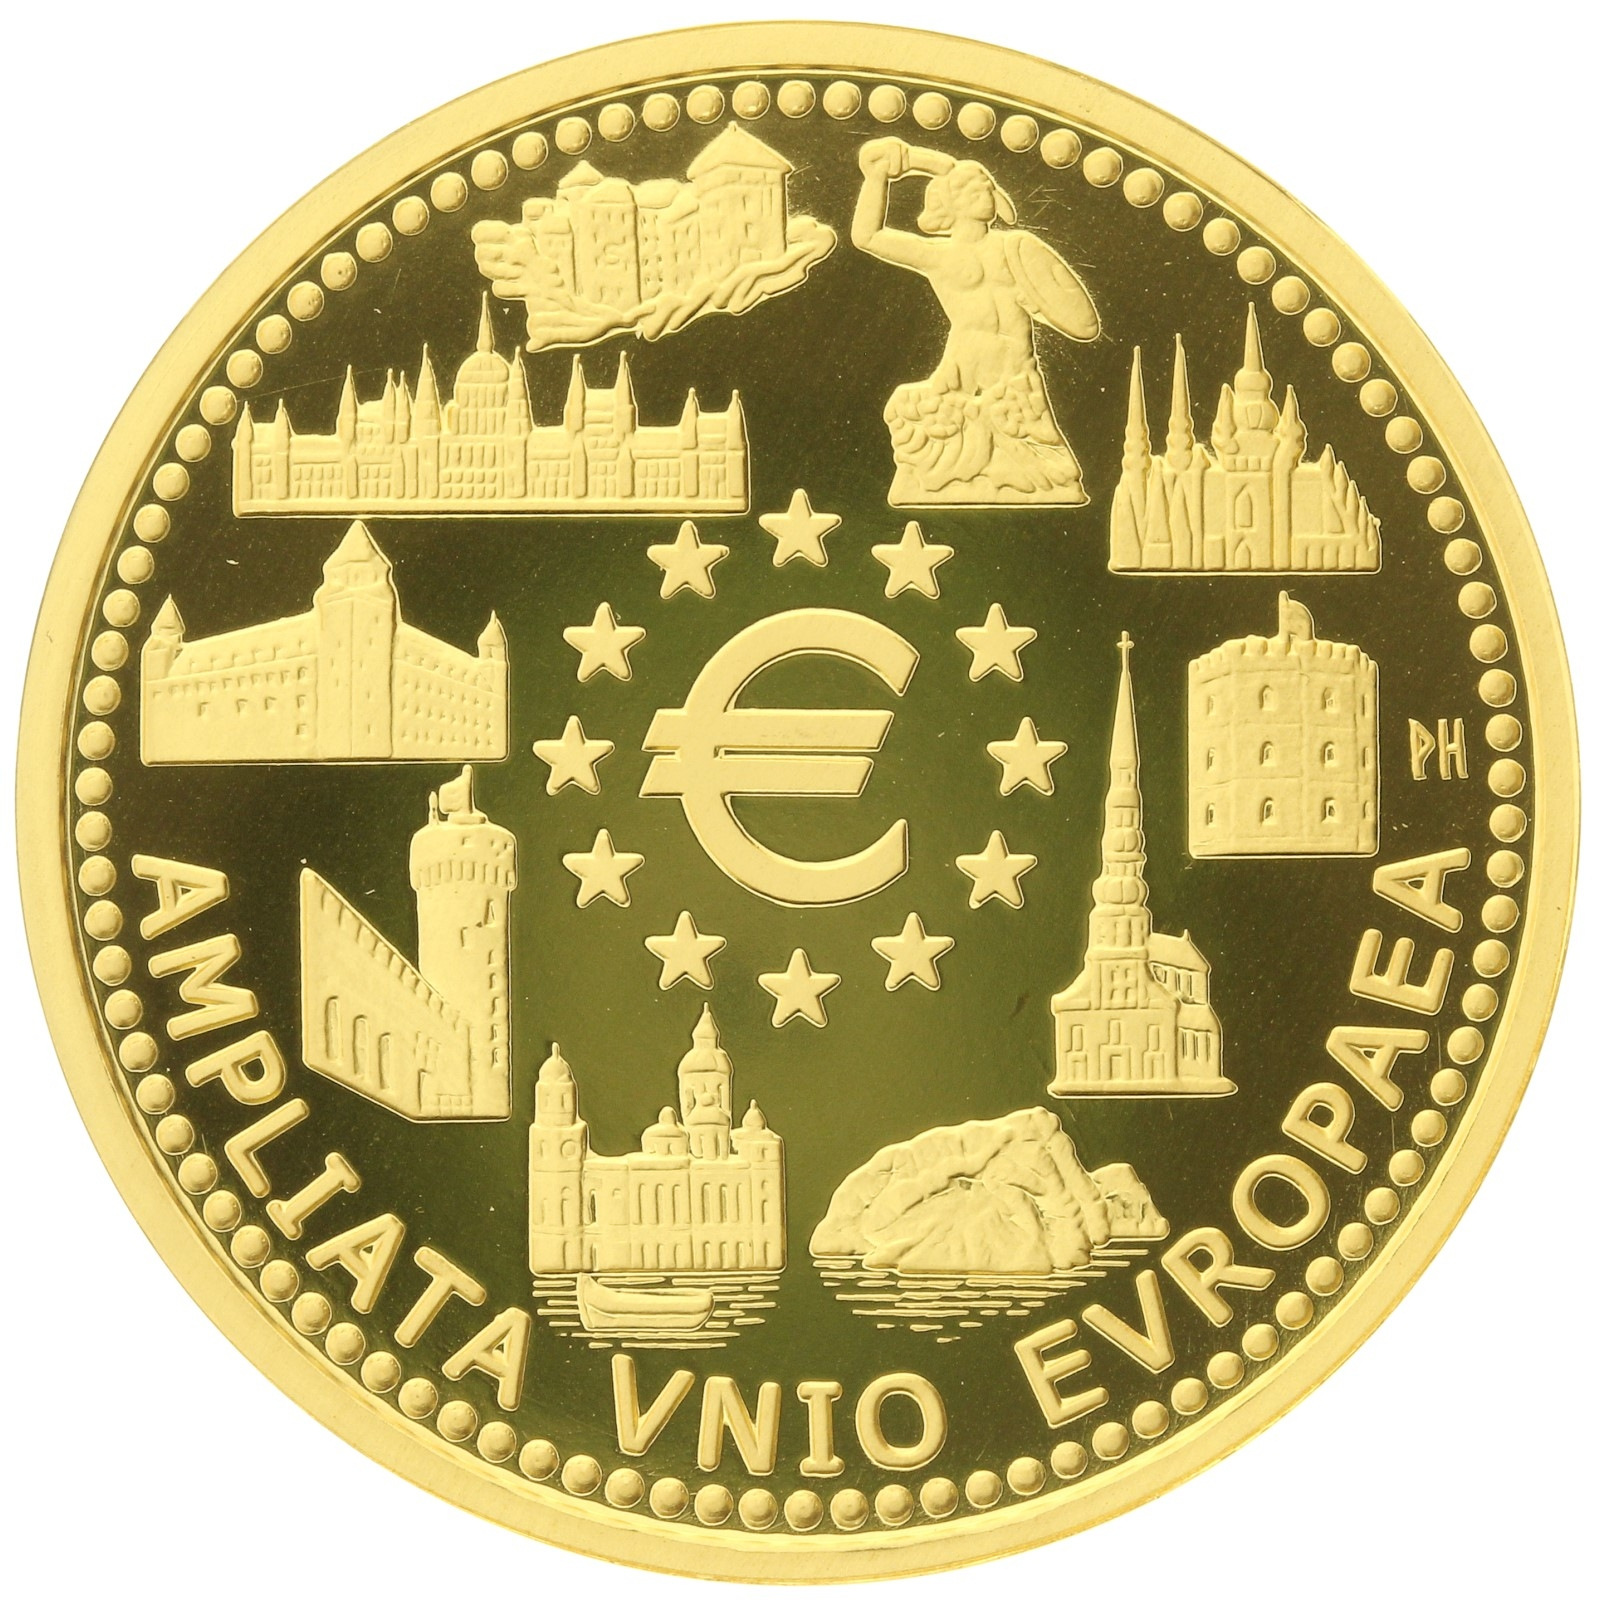 Belgium - 100 Euro - 2004 - Albert II - Expansion of the European Union - 1/2oz